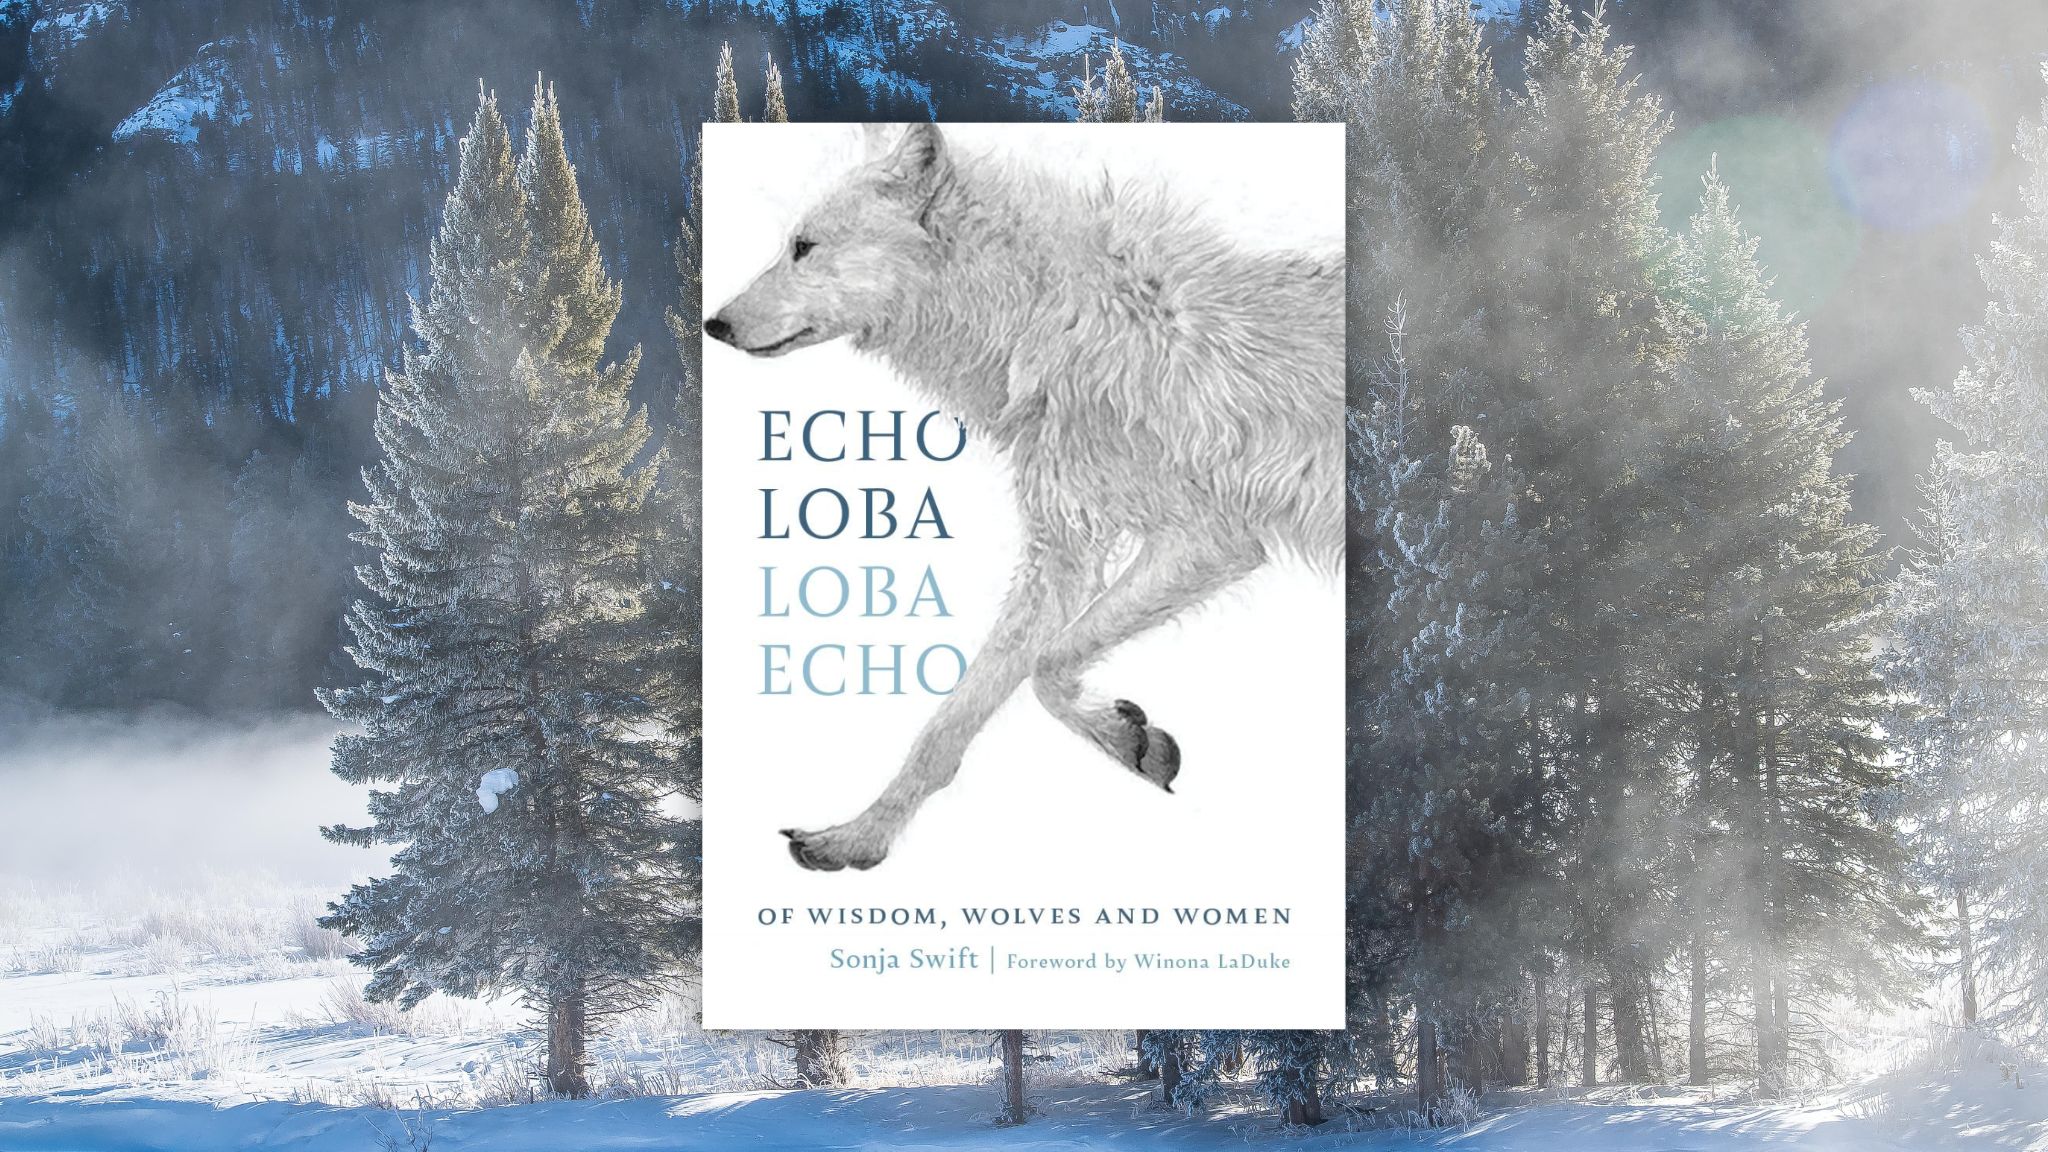 Echo Loba Loba Echo by Sonja Swift